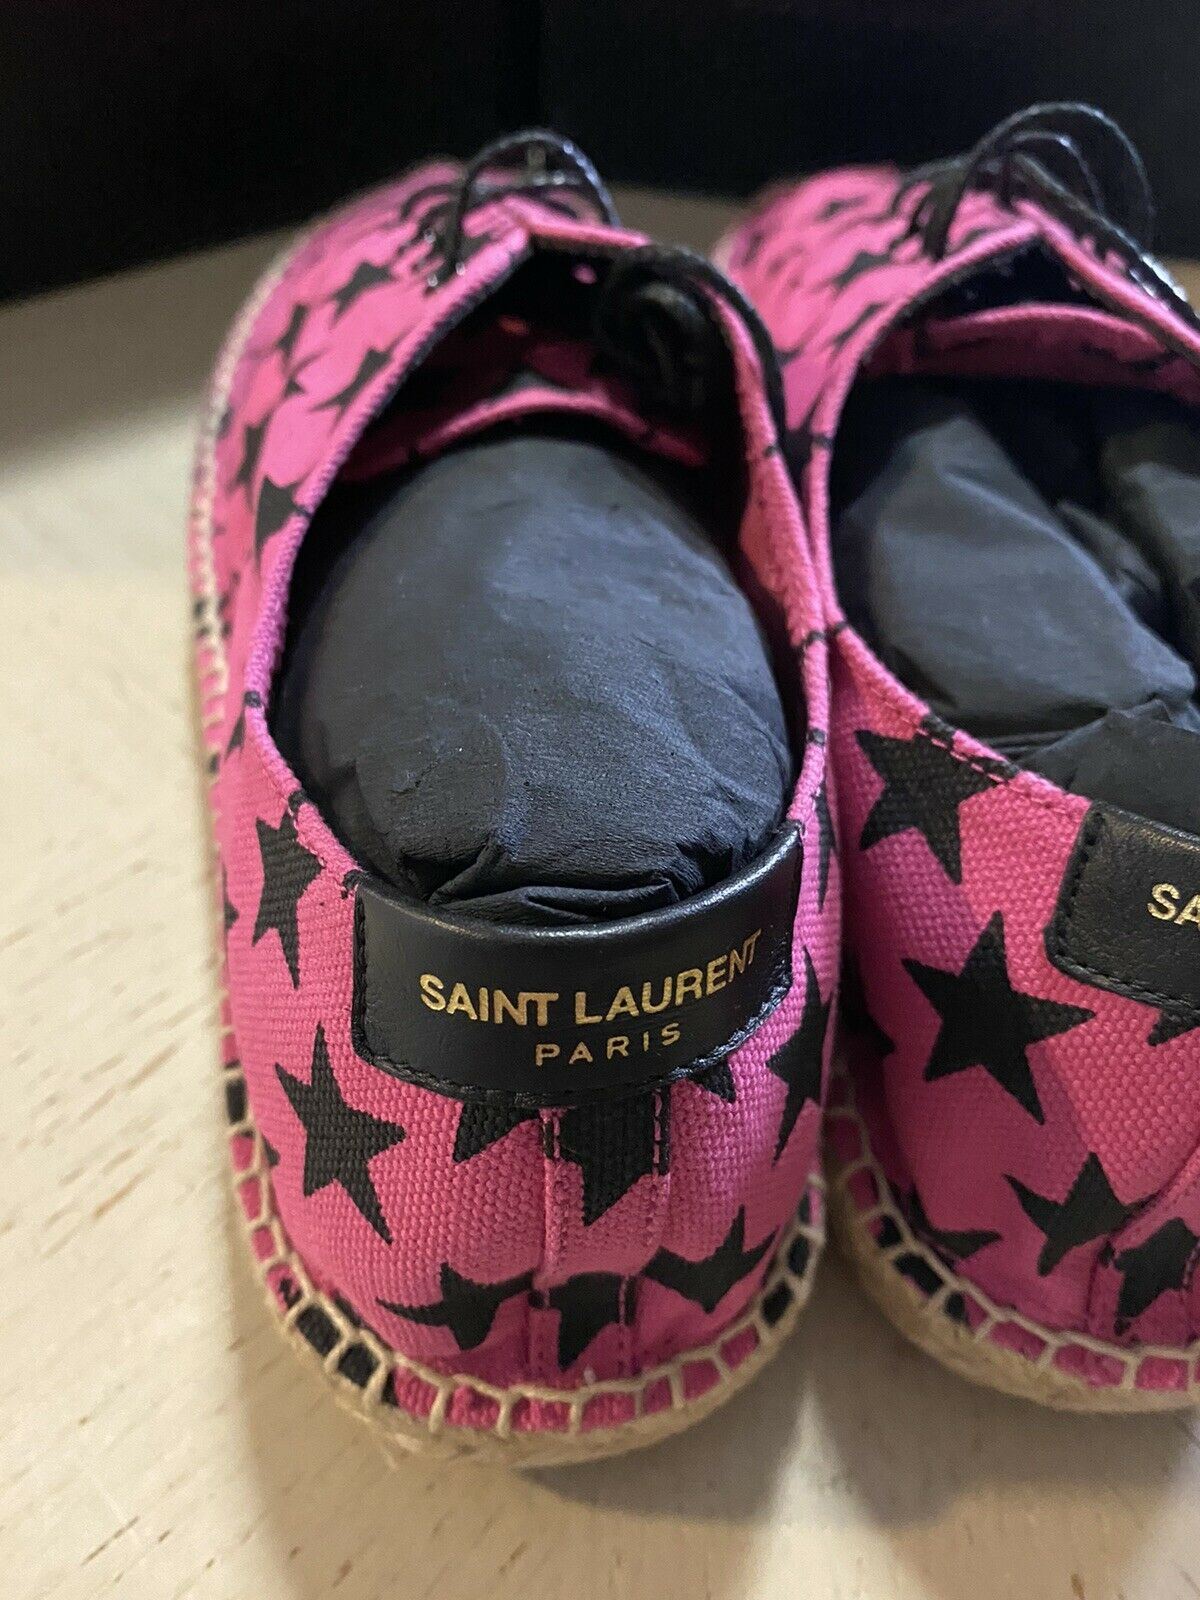 NIB Saint Laurent Damen-Espadrille-Schuhe mit Sternenmuster, Rot/Schwarz, 9,5 US/39,5 Eu